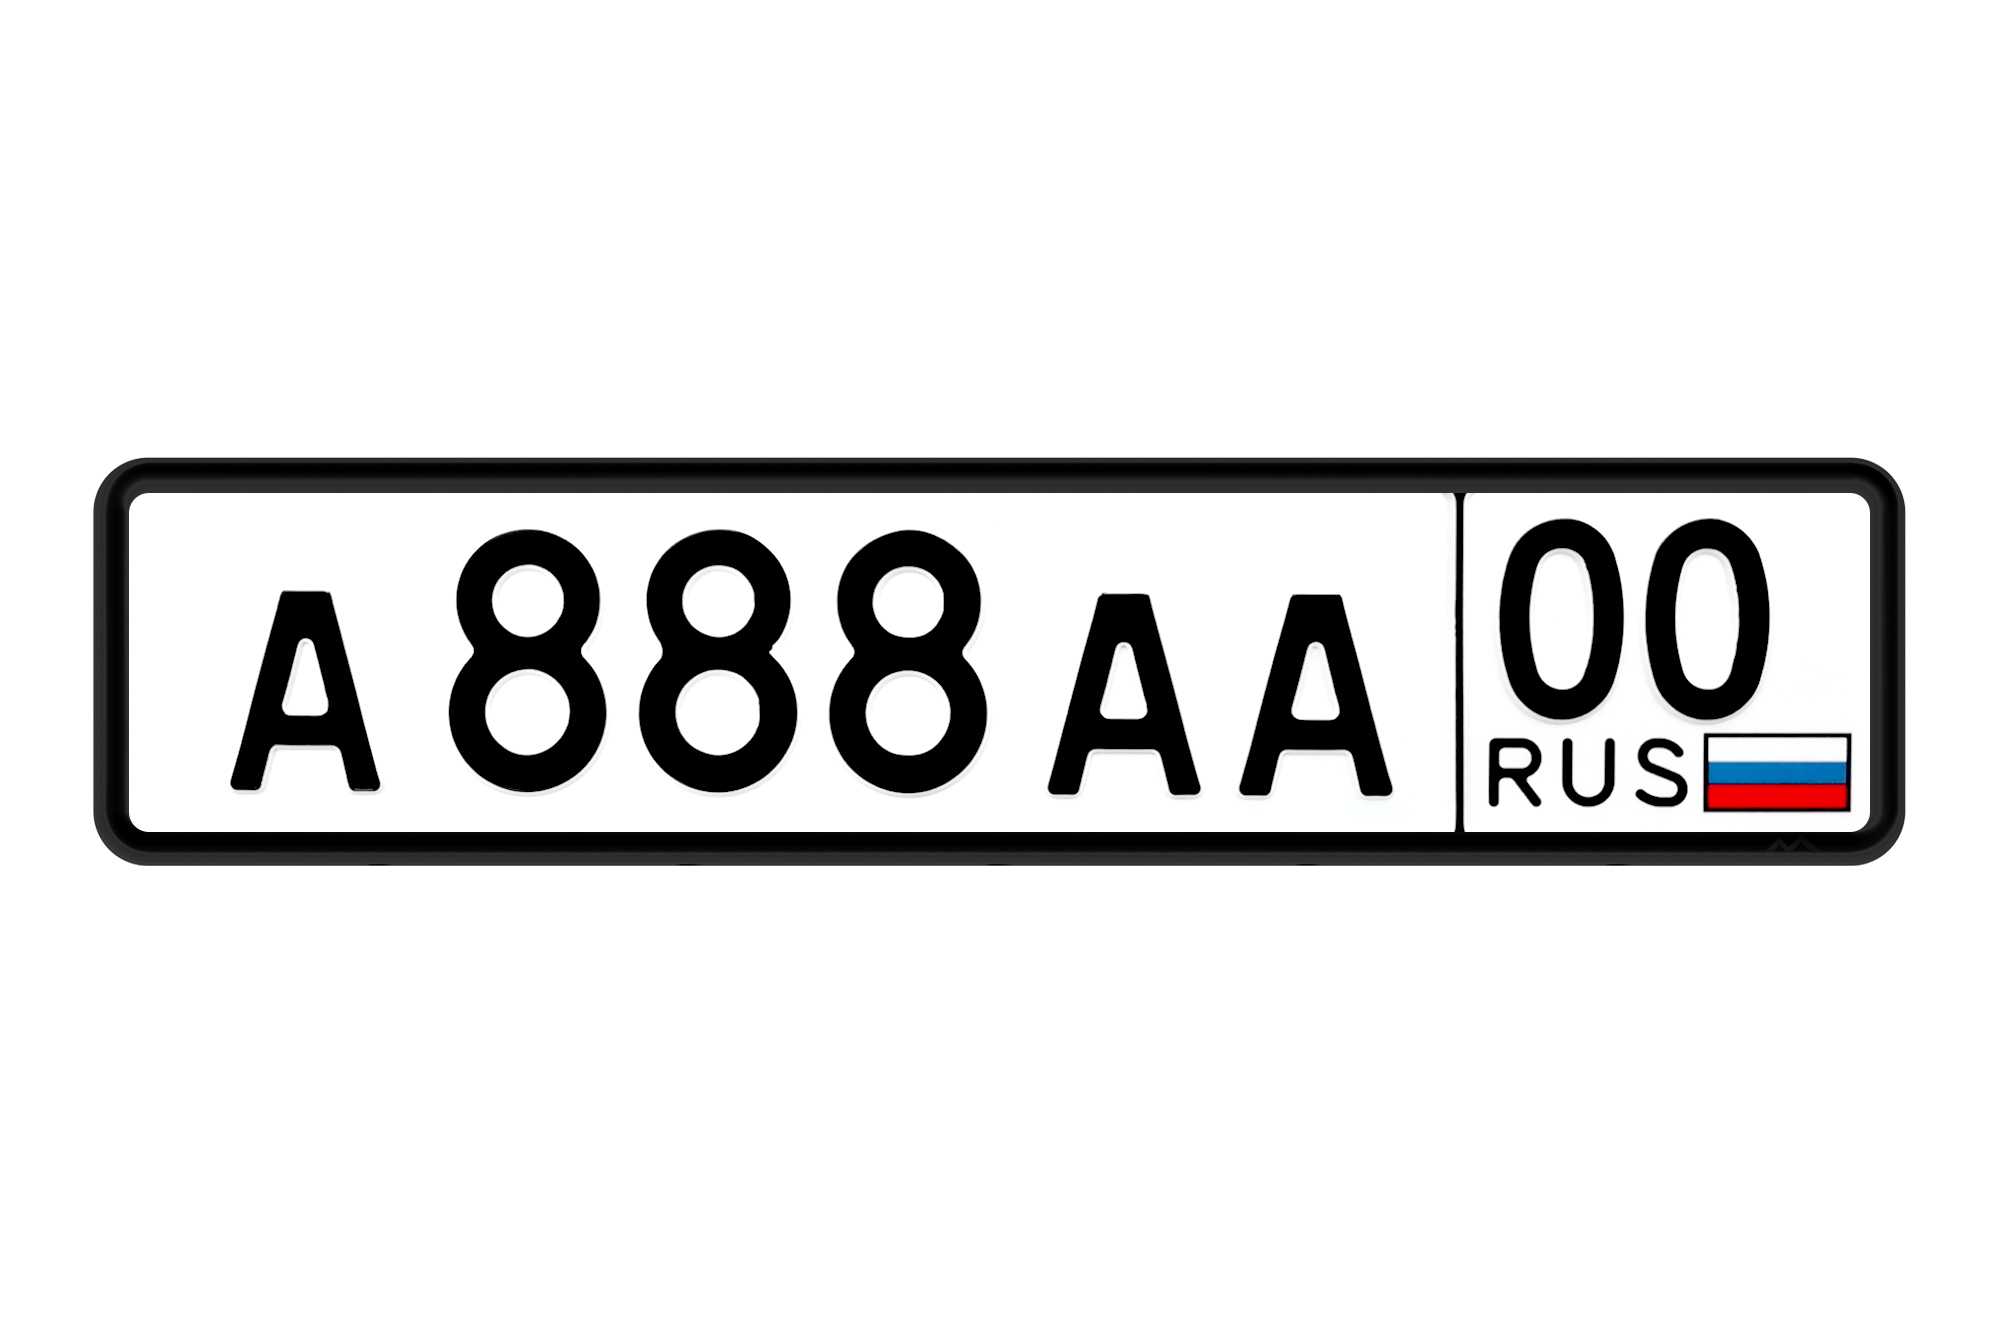 Гос номер автомобиля московская область. Автомобильные номера. Номерной знак автомобиля. Макет автомобильного номера. Гос номерной знак автомобиля.